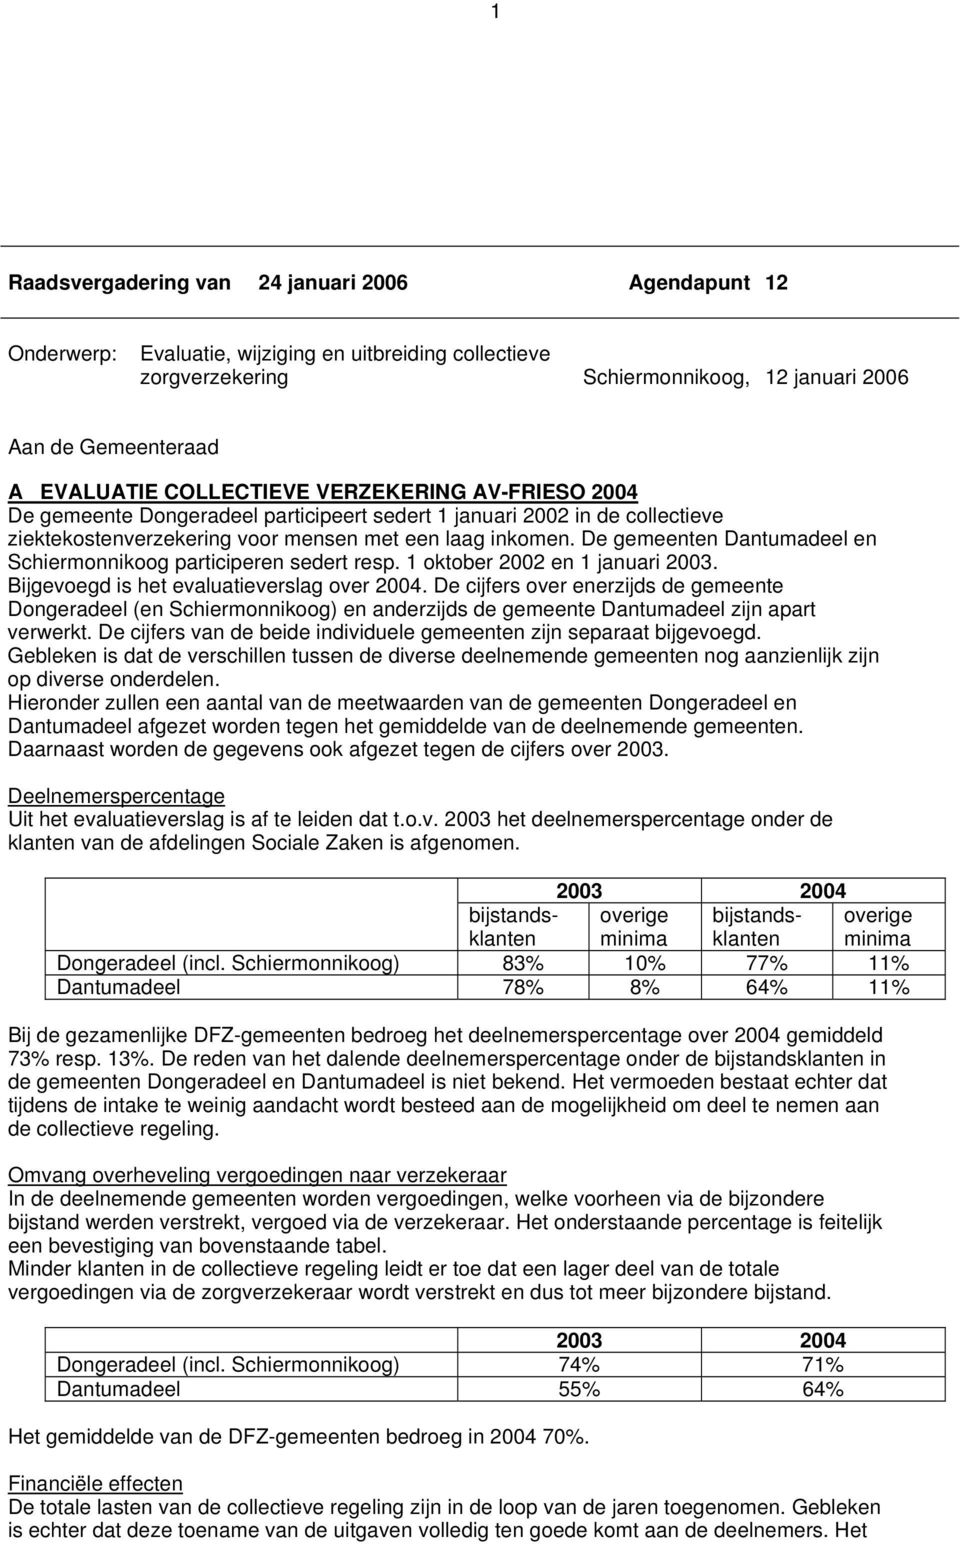 De gemeenten Dantumadeel en Schiermonnikoog participeren sedert resp. 1 oktober 2002 en 1 januari 2003. Bijgevoegd is het evaluatieverslag over 2004.